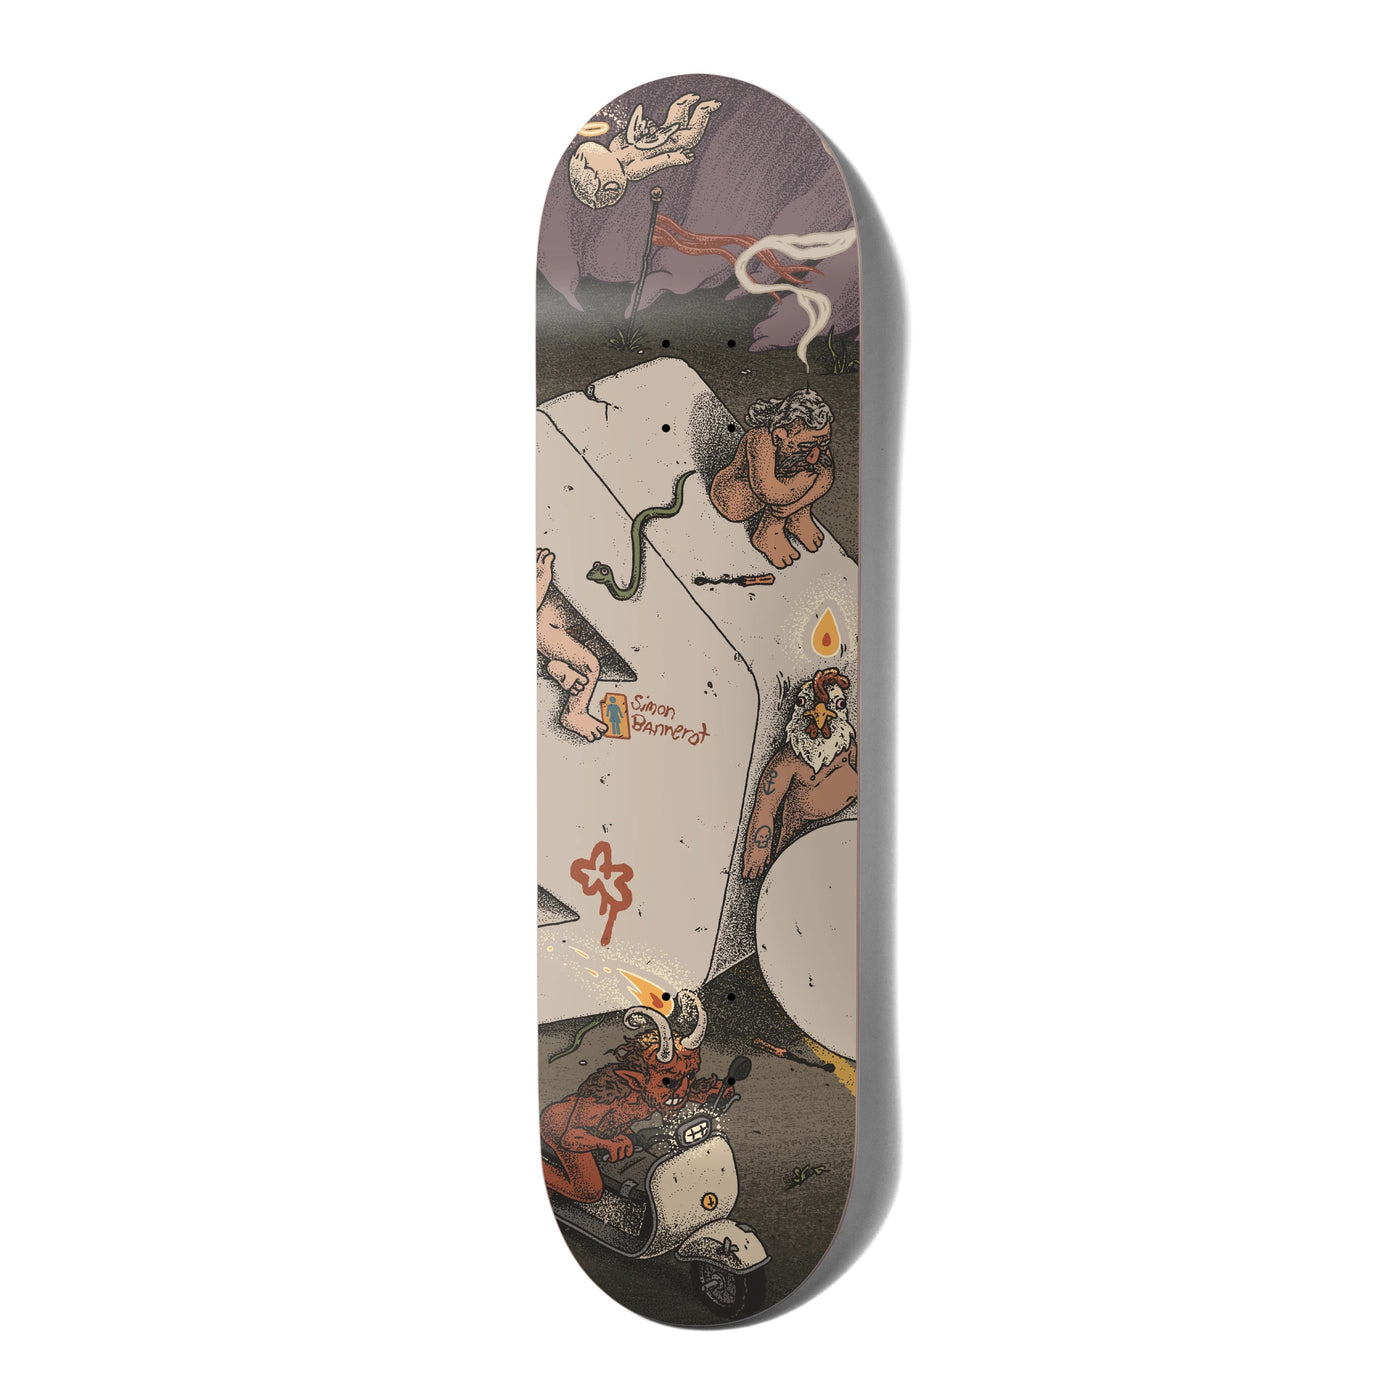 Fille Monumental Simon Bannerot Skateboard Deck - 8.5"